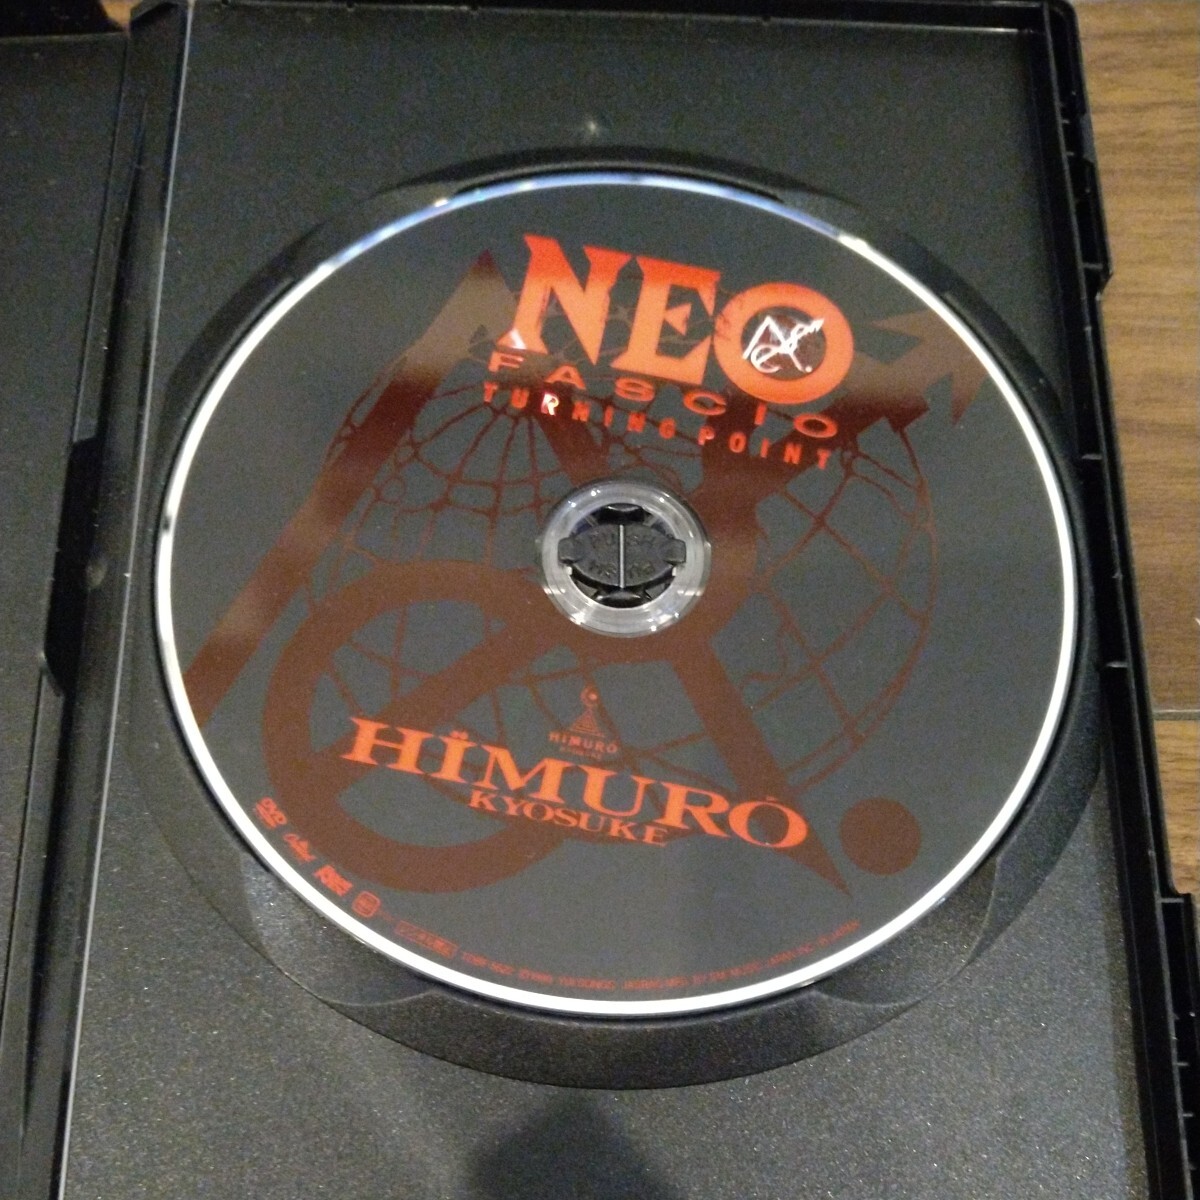 【送料無料】氷室京介 DVD NEO FASCIO TURNING POINT スタッフパス付属 BOOWY/ボウイ